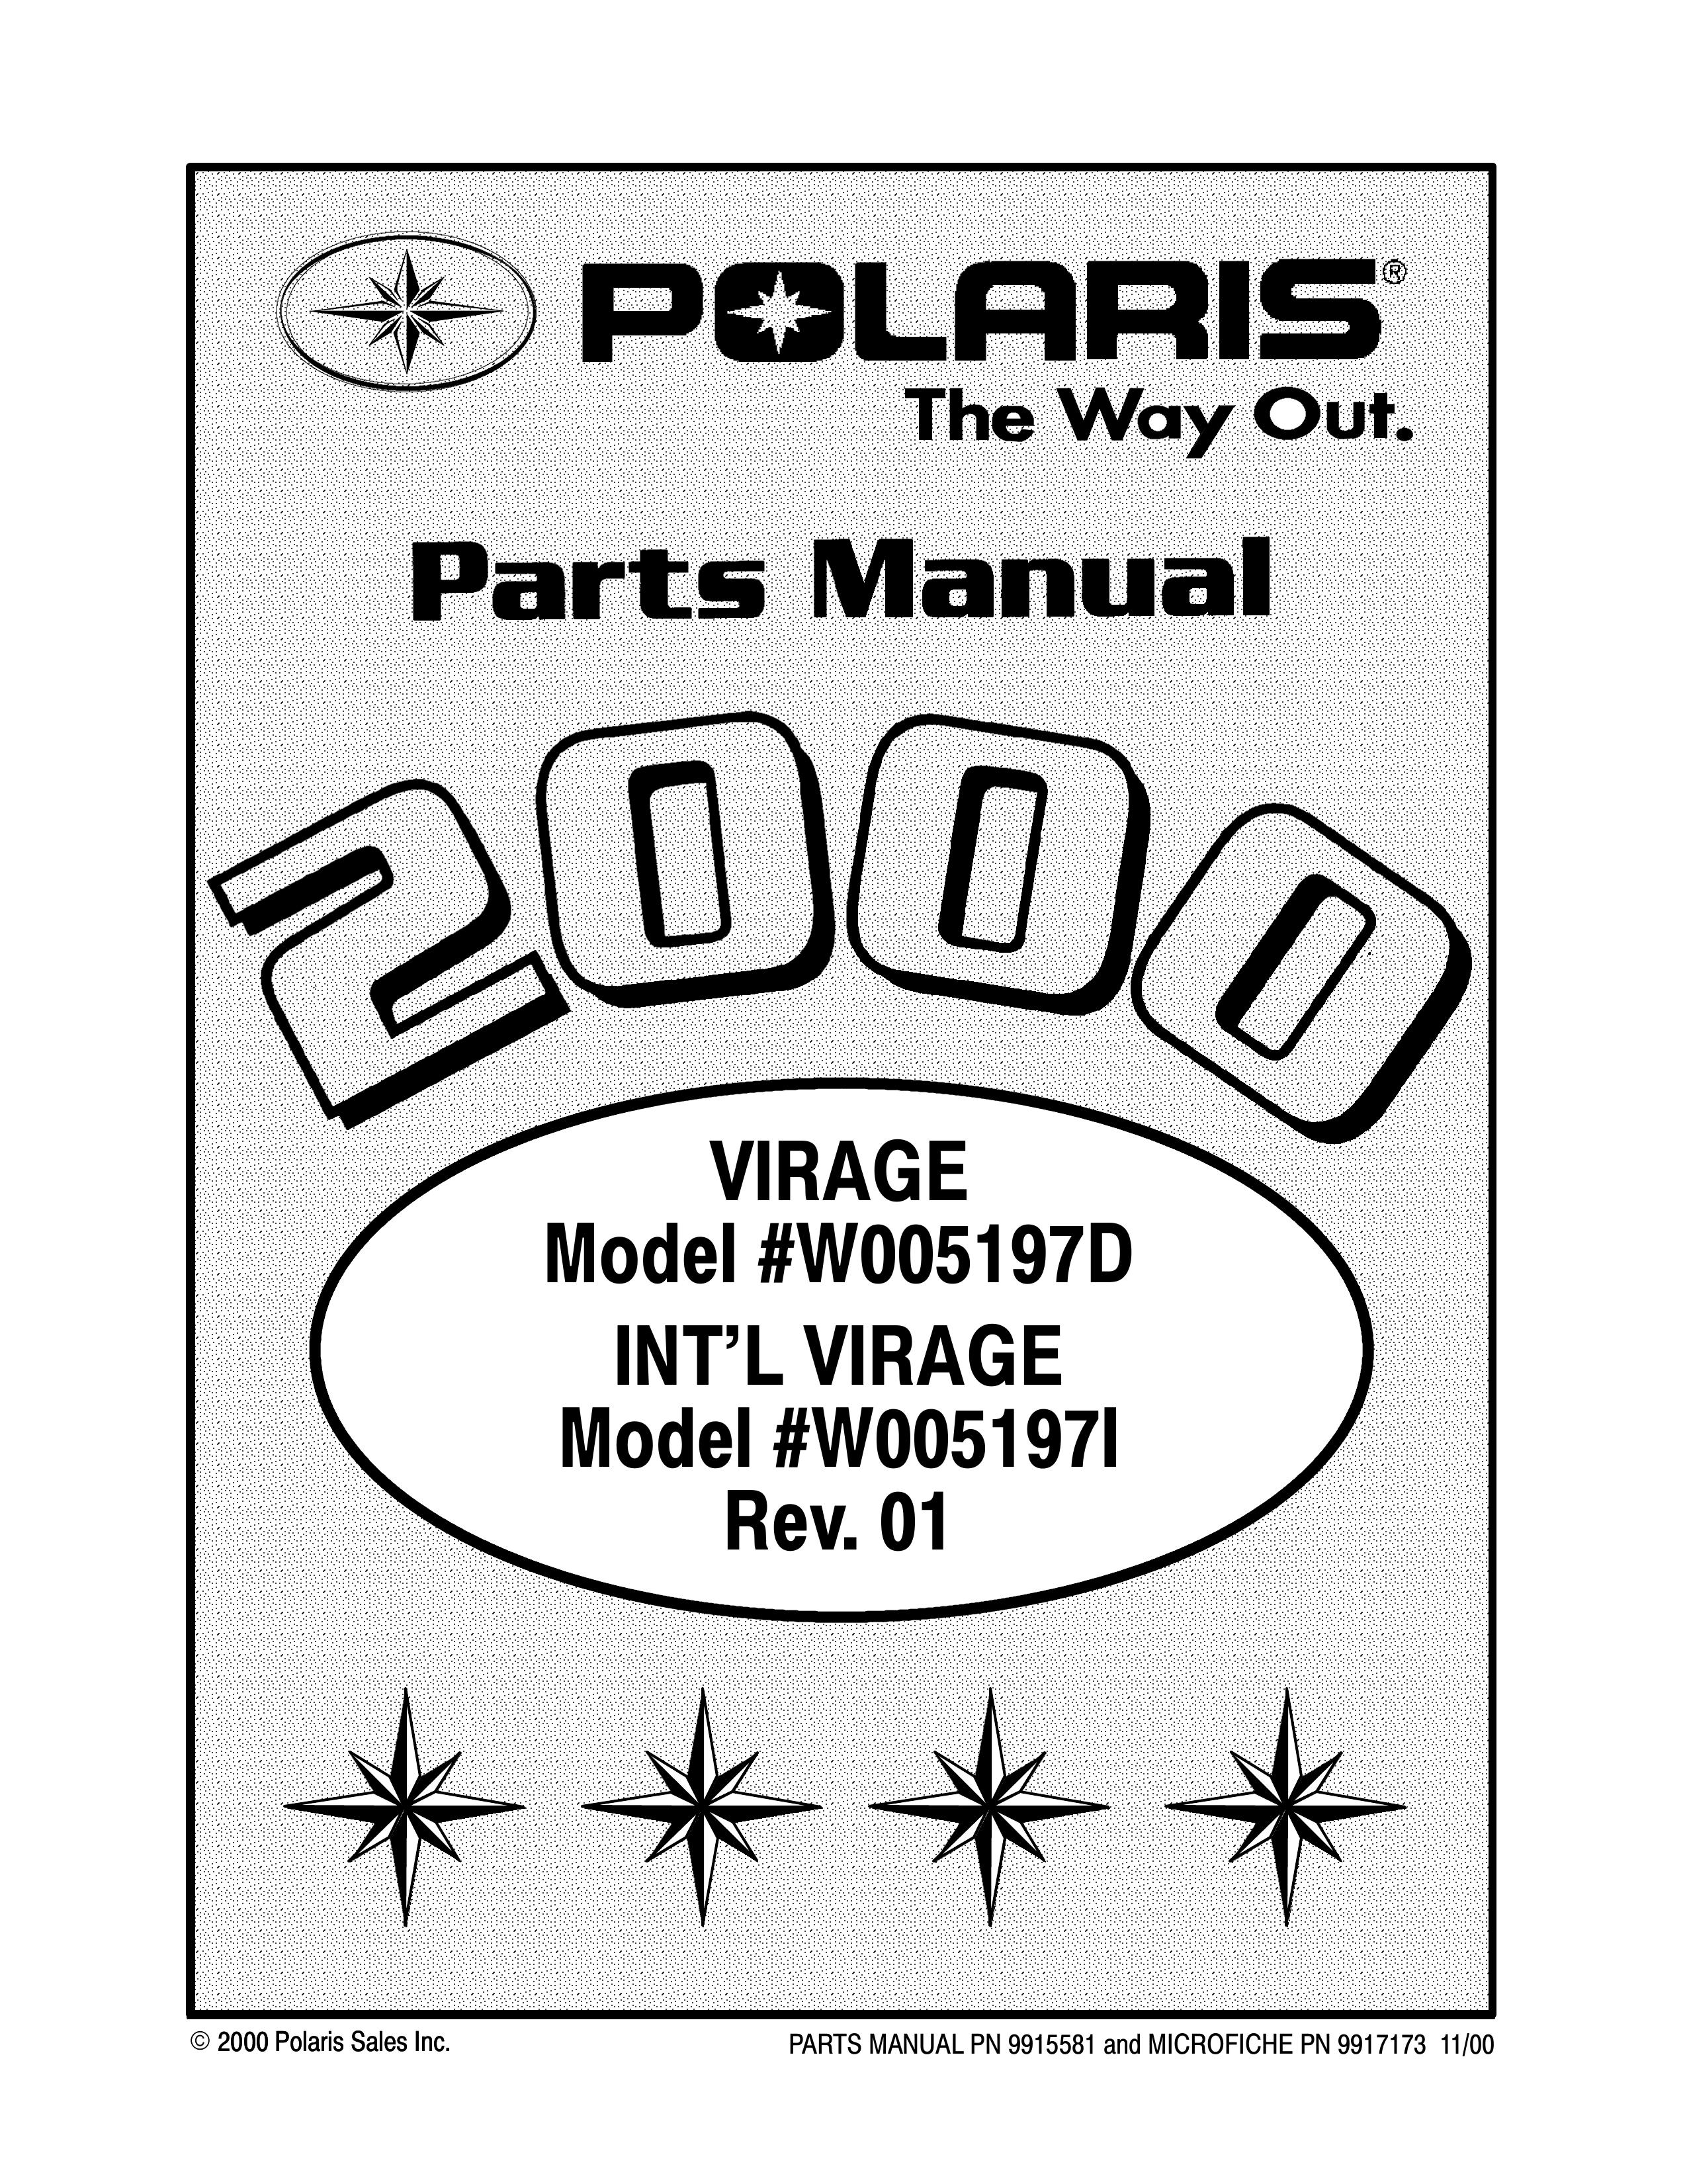 Polaris W005197I Jet Ski User Manual